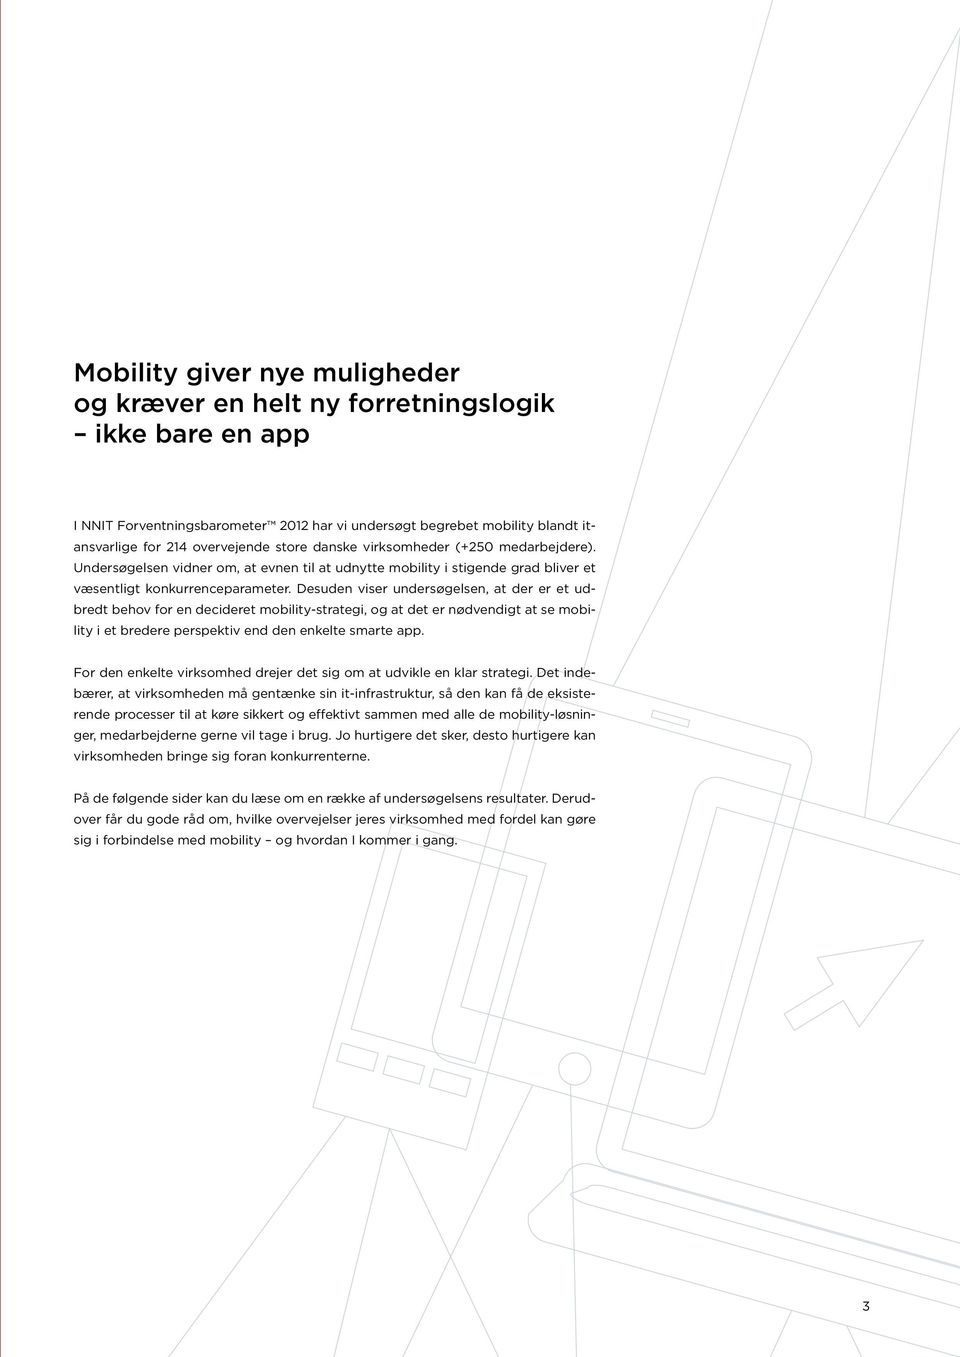 Desuden viser undersøgelsen, at der er et udbredt behov for en decideret mobility-strategi, og at det er nødvendigt at se mobility i et bredere perspektiv end den enkelte smarte app.